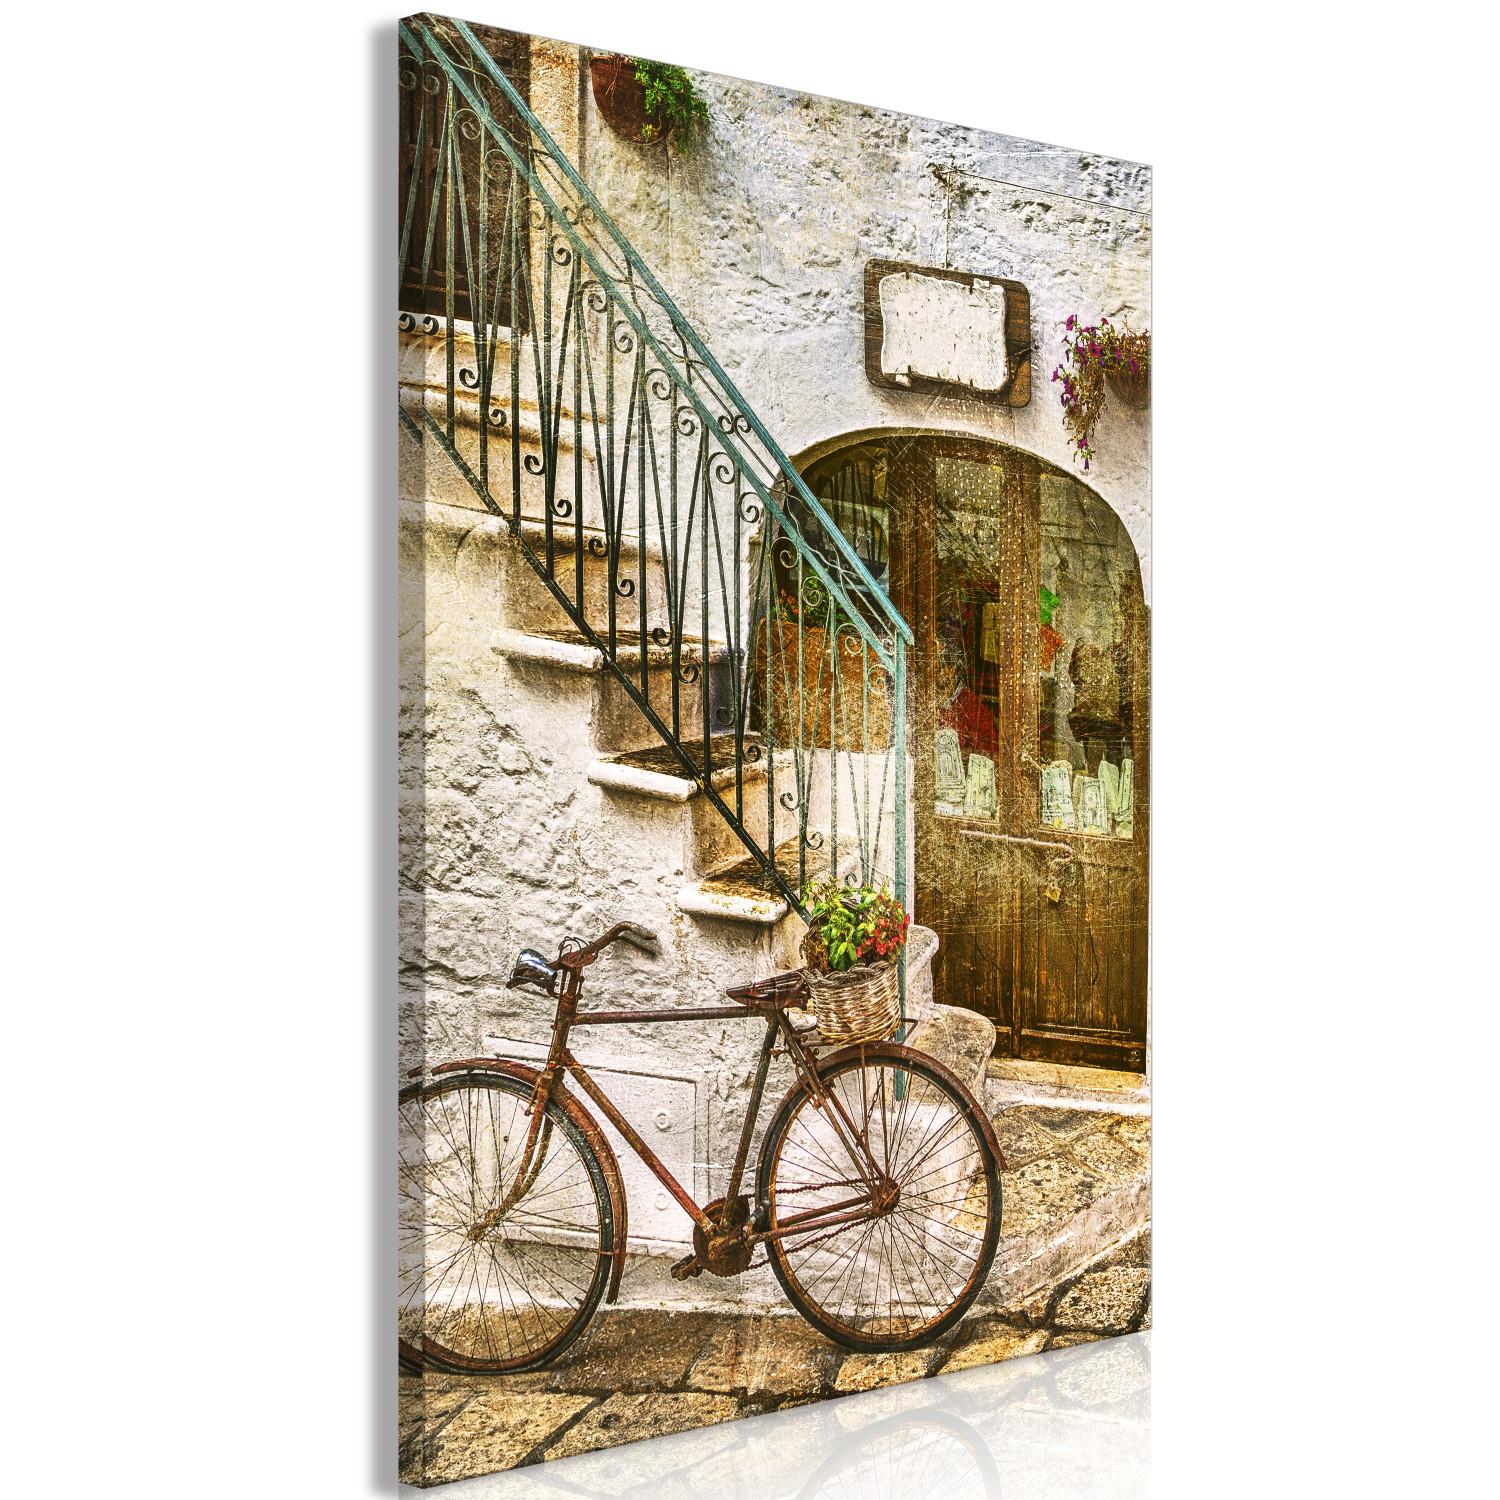 Cuadro moderno Bicicleta junto a la escalera de piedra - foto de una ciudad italiana